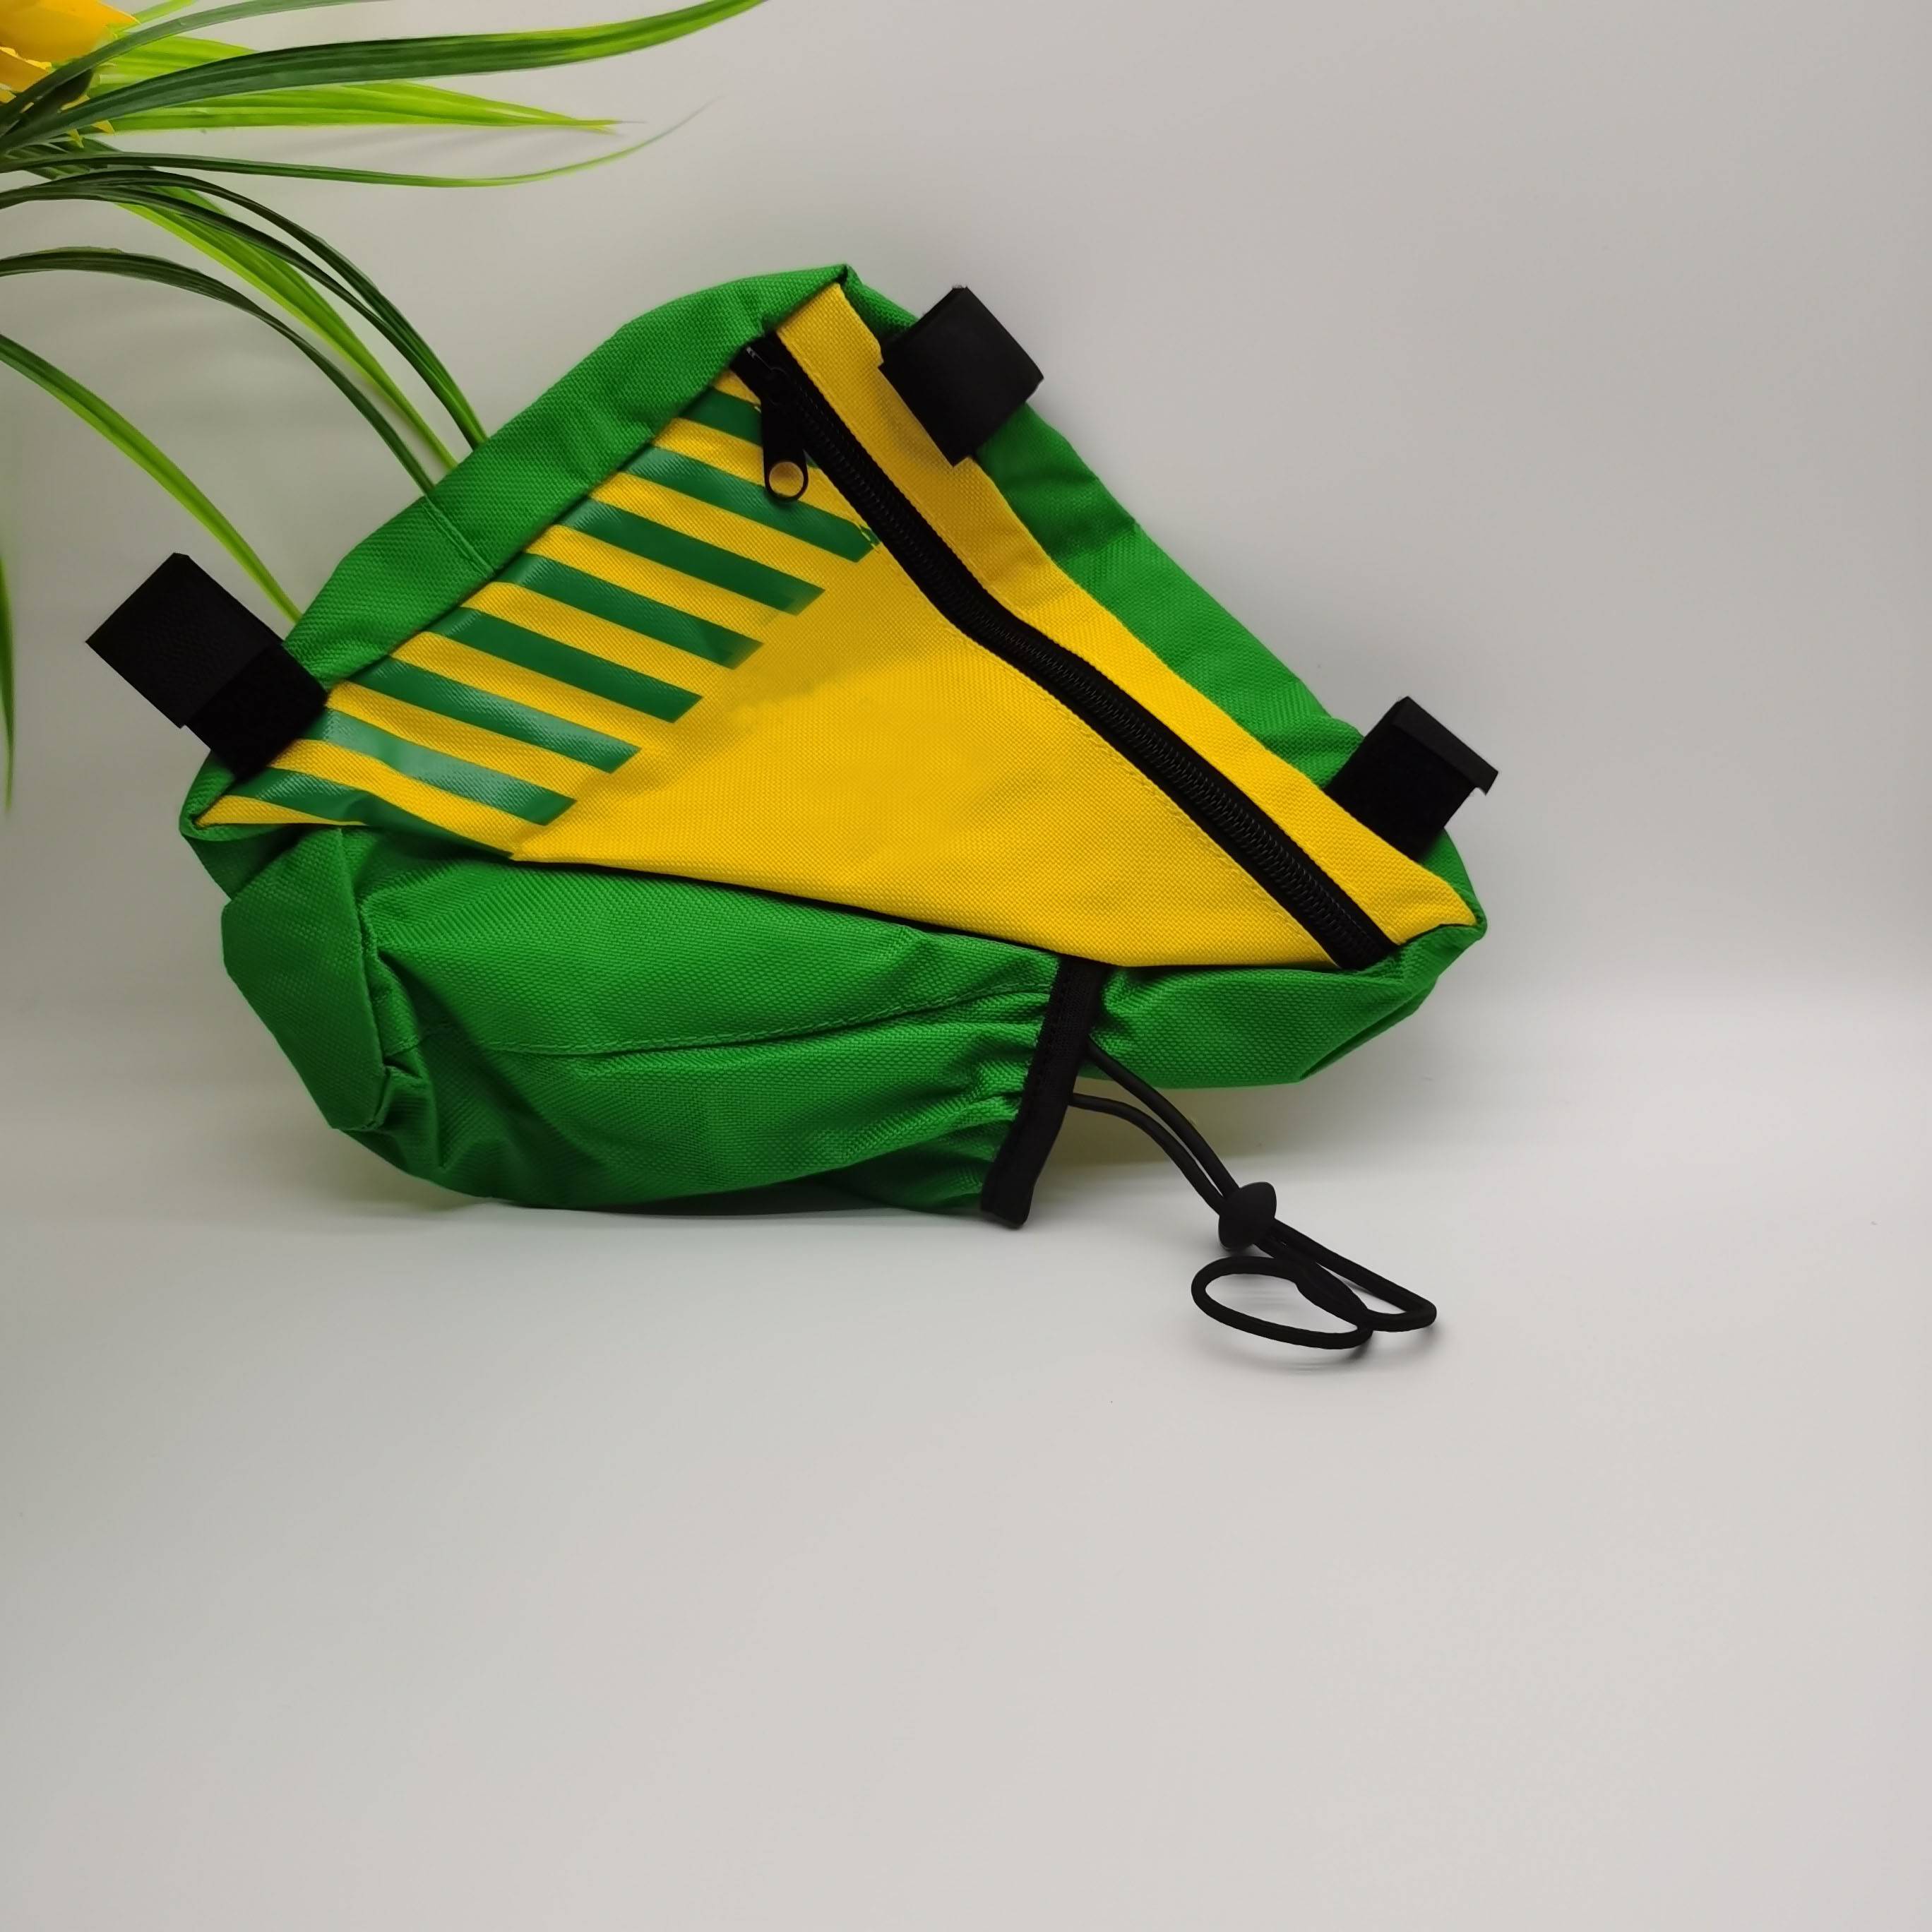 waterproof bike bag in camflage color Featured Image